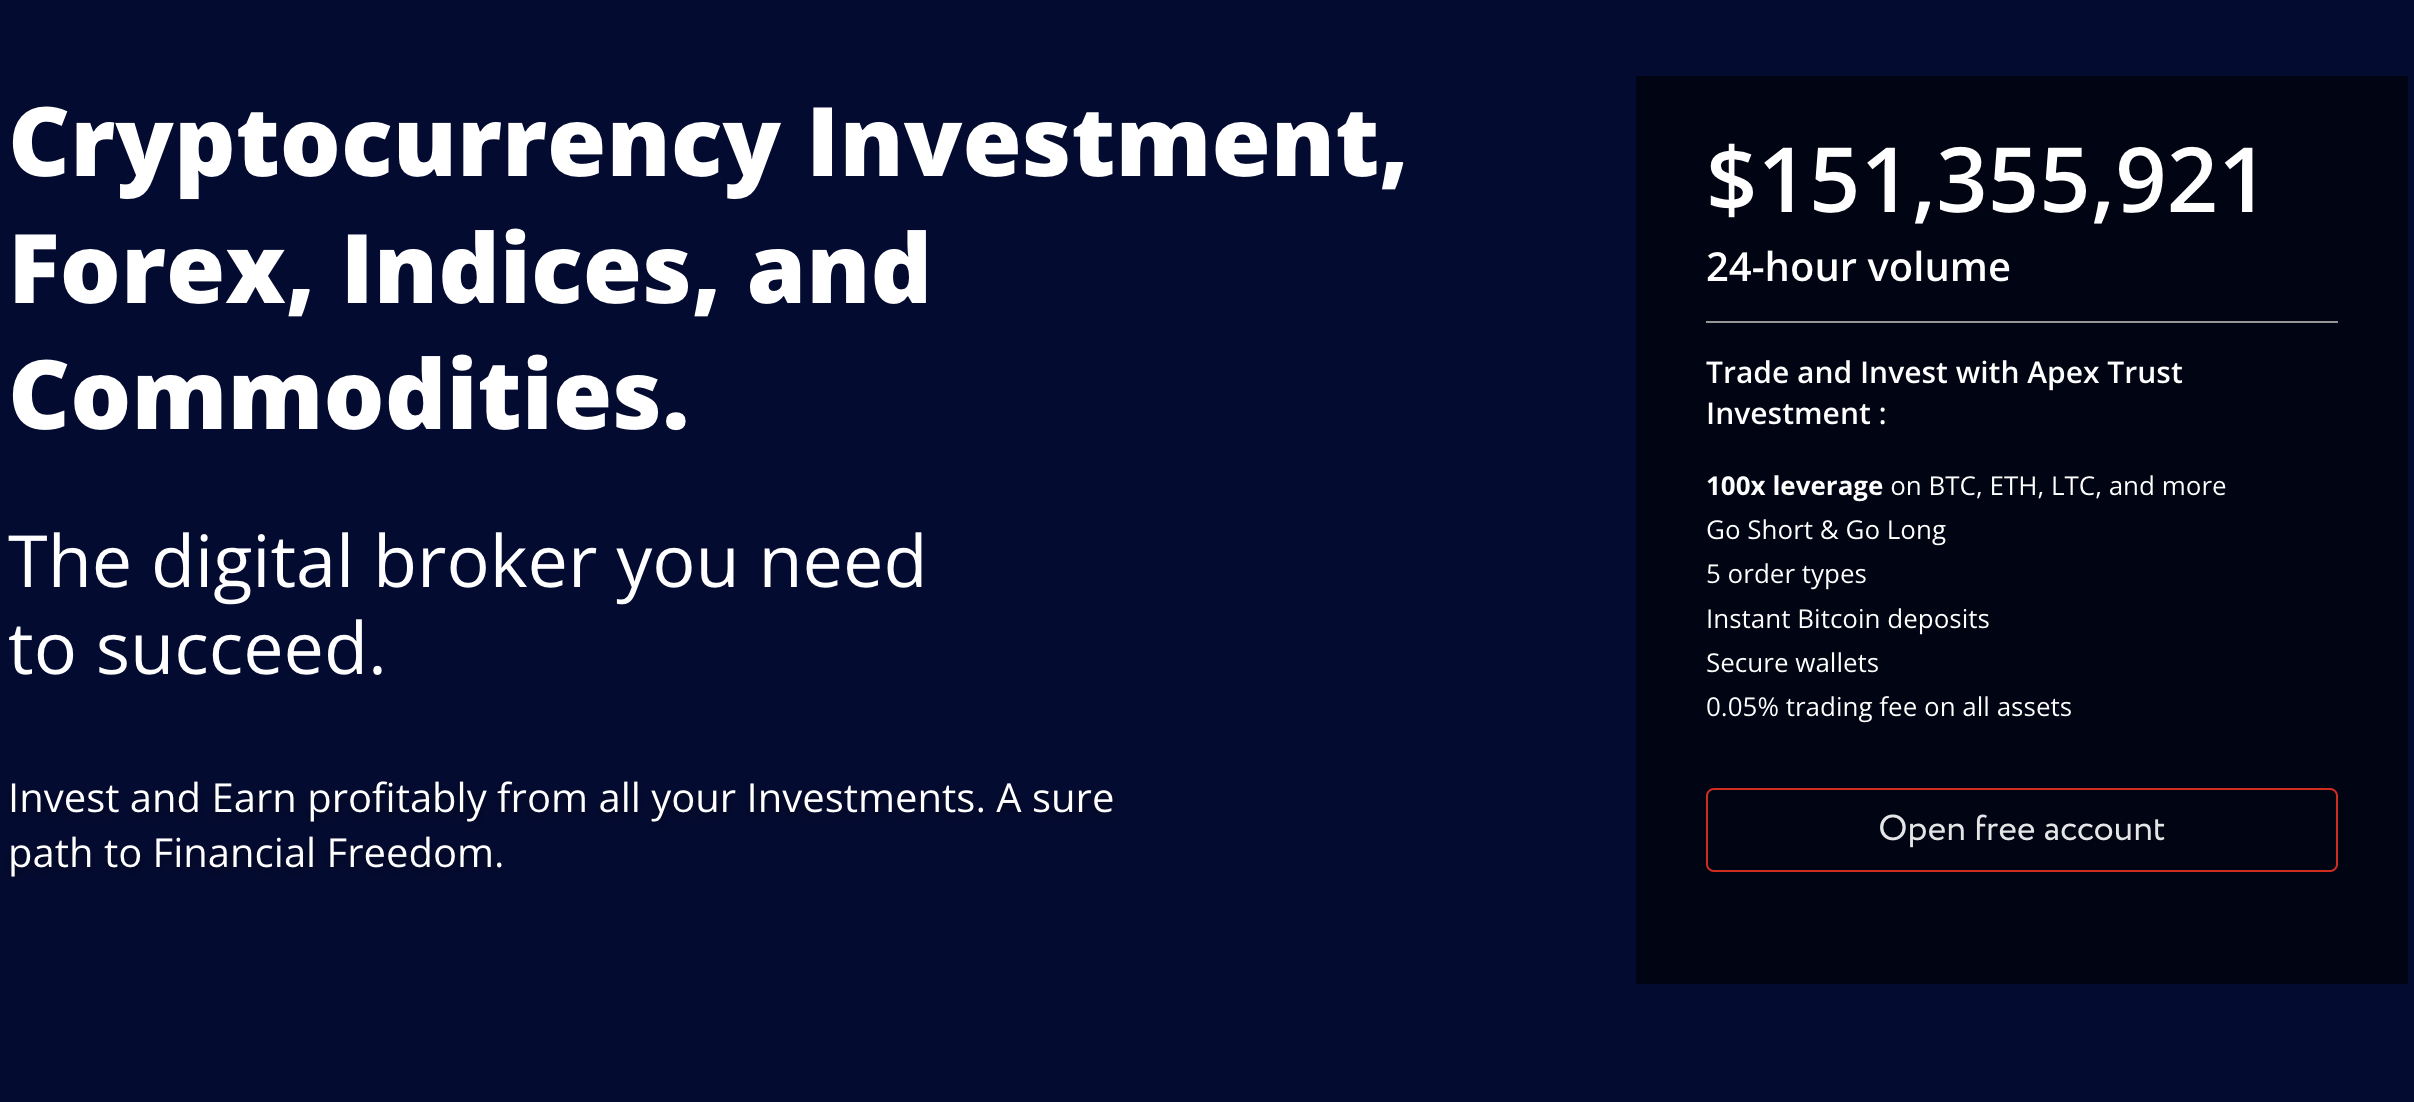 Apex Trust Investment cover